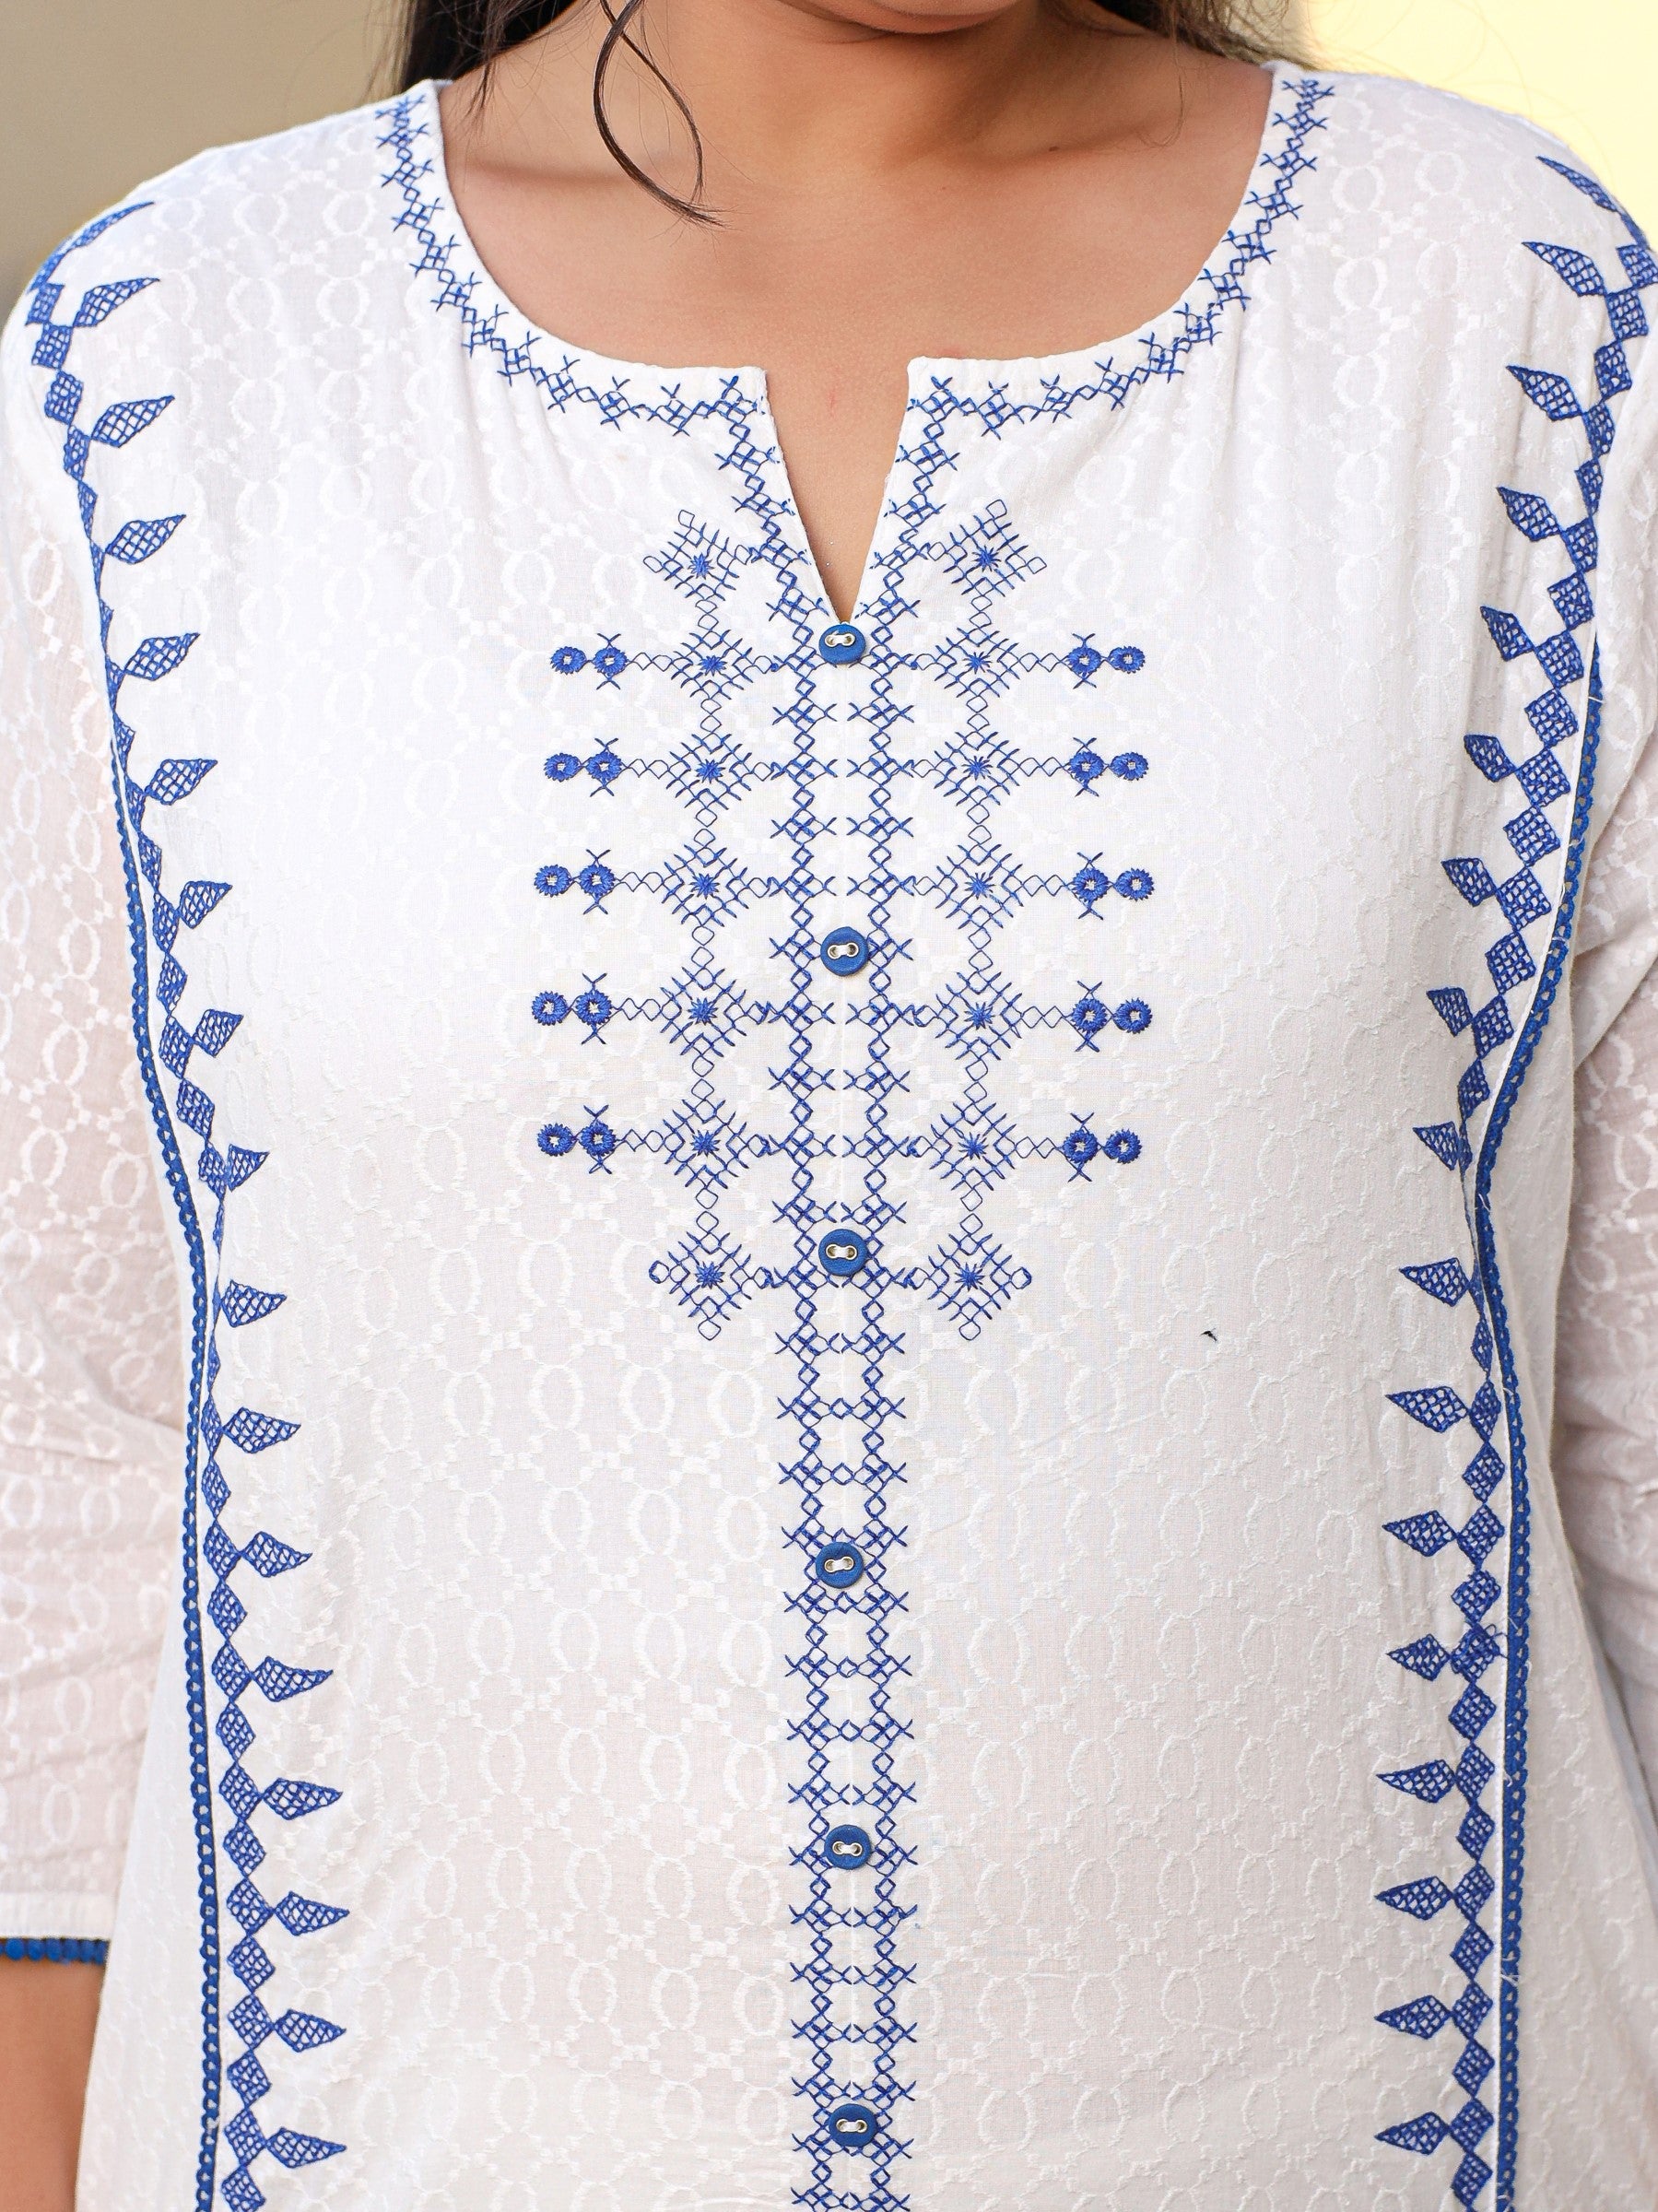 White & Blue Cross Stitch Embroidered Cotton Dobby Plus Size Kurta Palazzo & Dupatta Set With Lace & Fabric Bottons